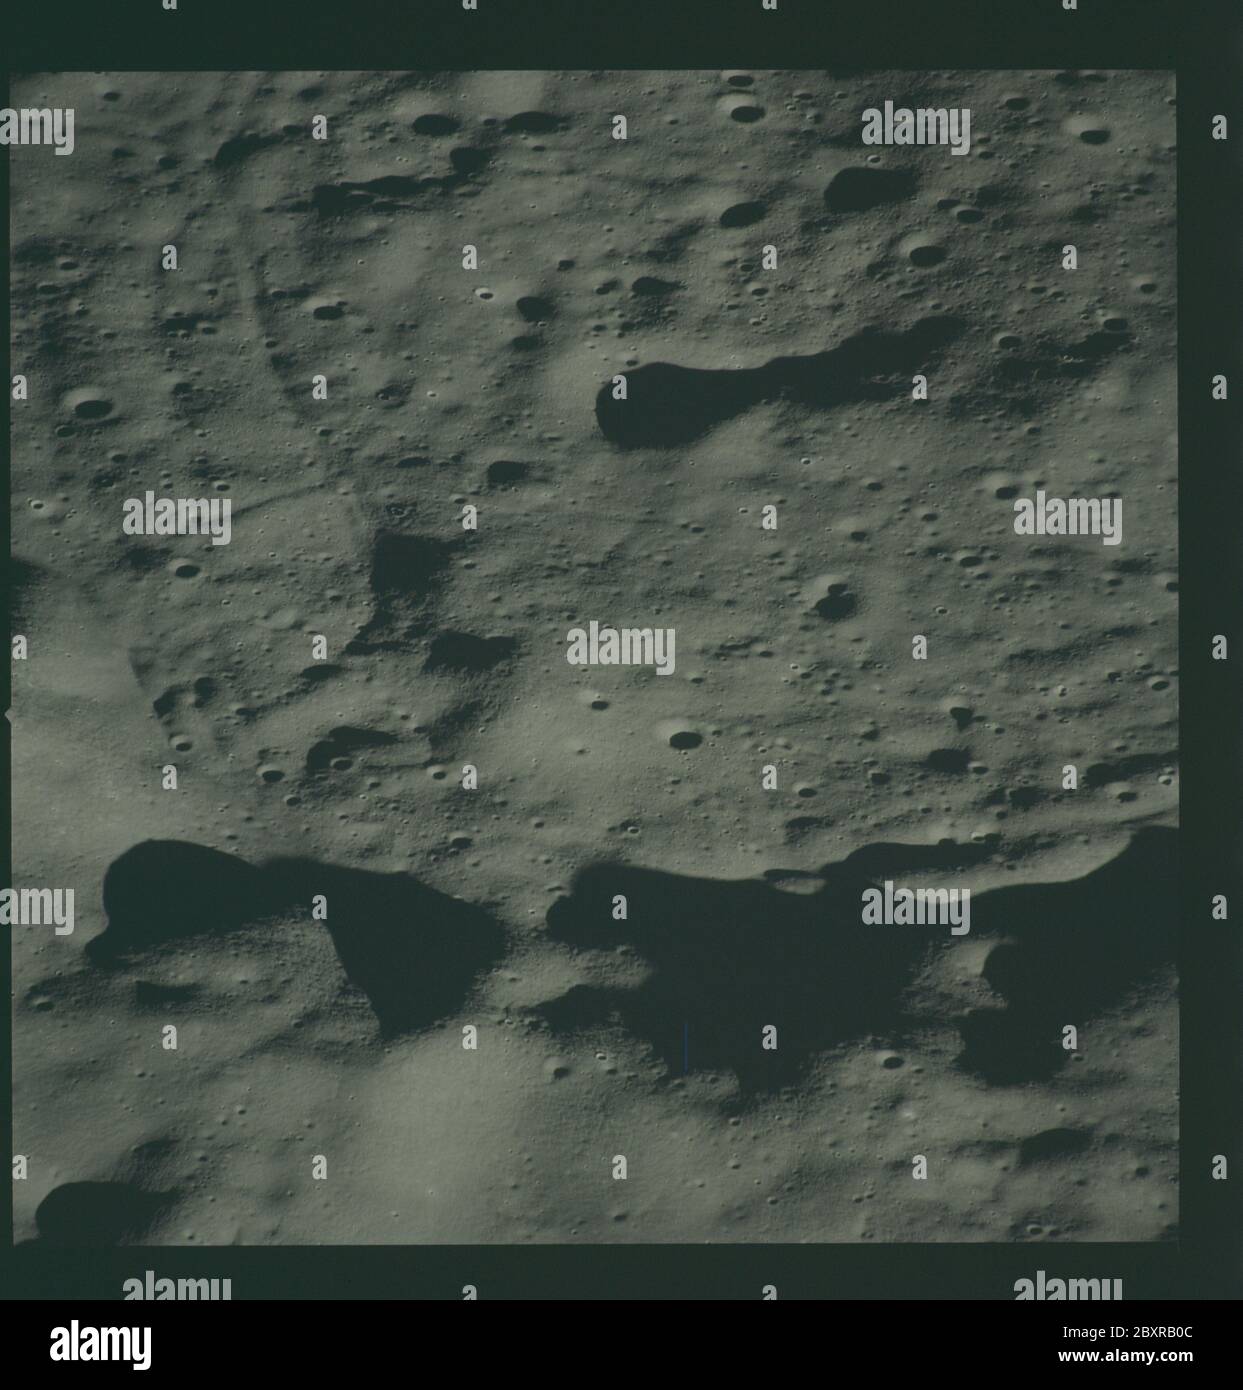 AS14-72-9959 - Apollo 14 - immagine della missione Apollo 14 - Vista della superficie lunare ad ovest del cratere Chaplygin.; scopo e contenuto: Il database originale descrive questo come: Descrizione: Vista della superficie lunare ad ovest del cratere Chaplygin. Le immagini sono state scattate durante la Rivoluzione 14 della missione Apollo 14. Il caricatore di pellicola originale era etichettato L, il tipo di pellicola era CEX S0-368 (Ektachrome MS, inversione di colore), lente da 500 mm con un'elevazione del sole di 7 gradi. La scala approssimativa della foto è 1:1,360,000. La latitudine del punto principale era 4.0S per Longitudine 146.0E, con un'inclinazione della telecamera di 50 gradi e un azimuth di 120 gradi Foto Stock